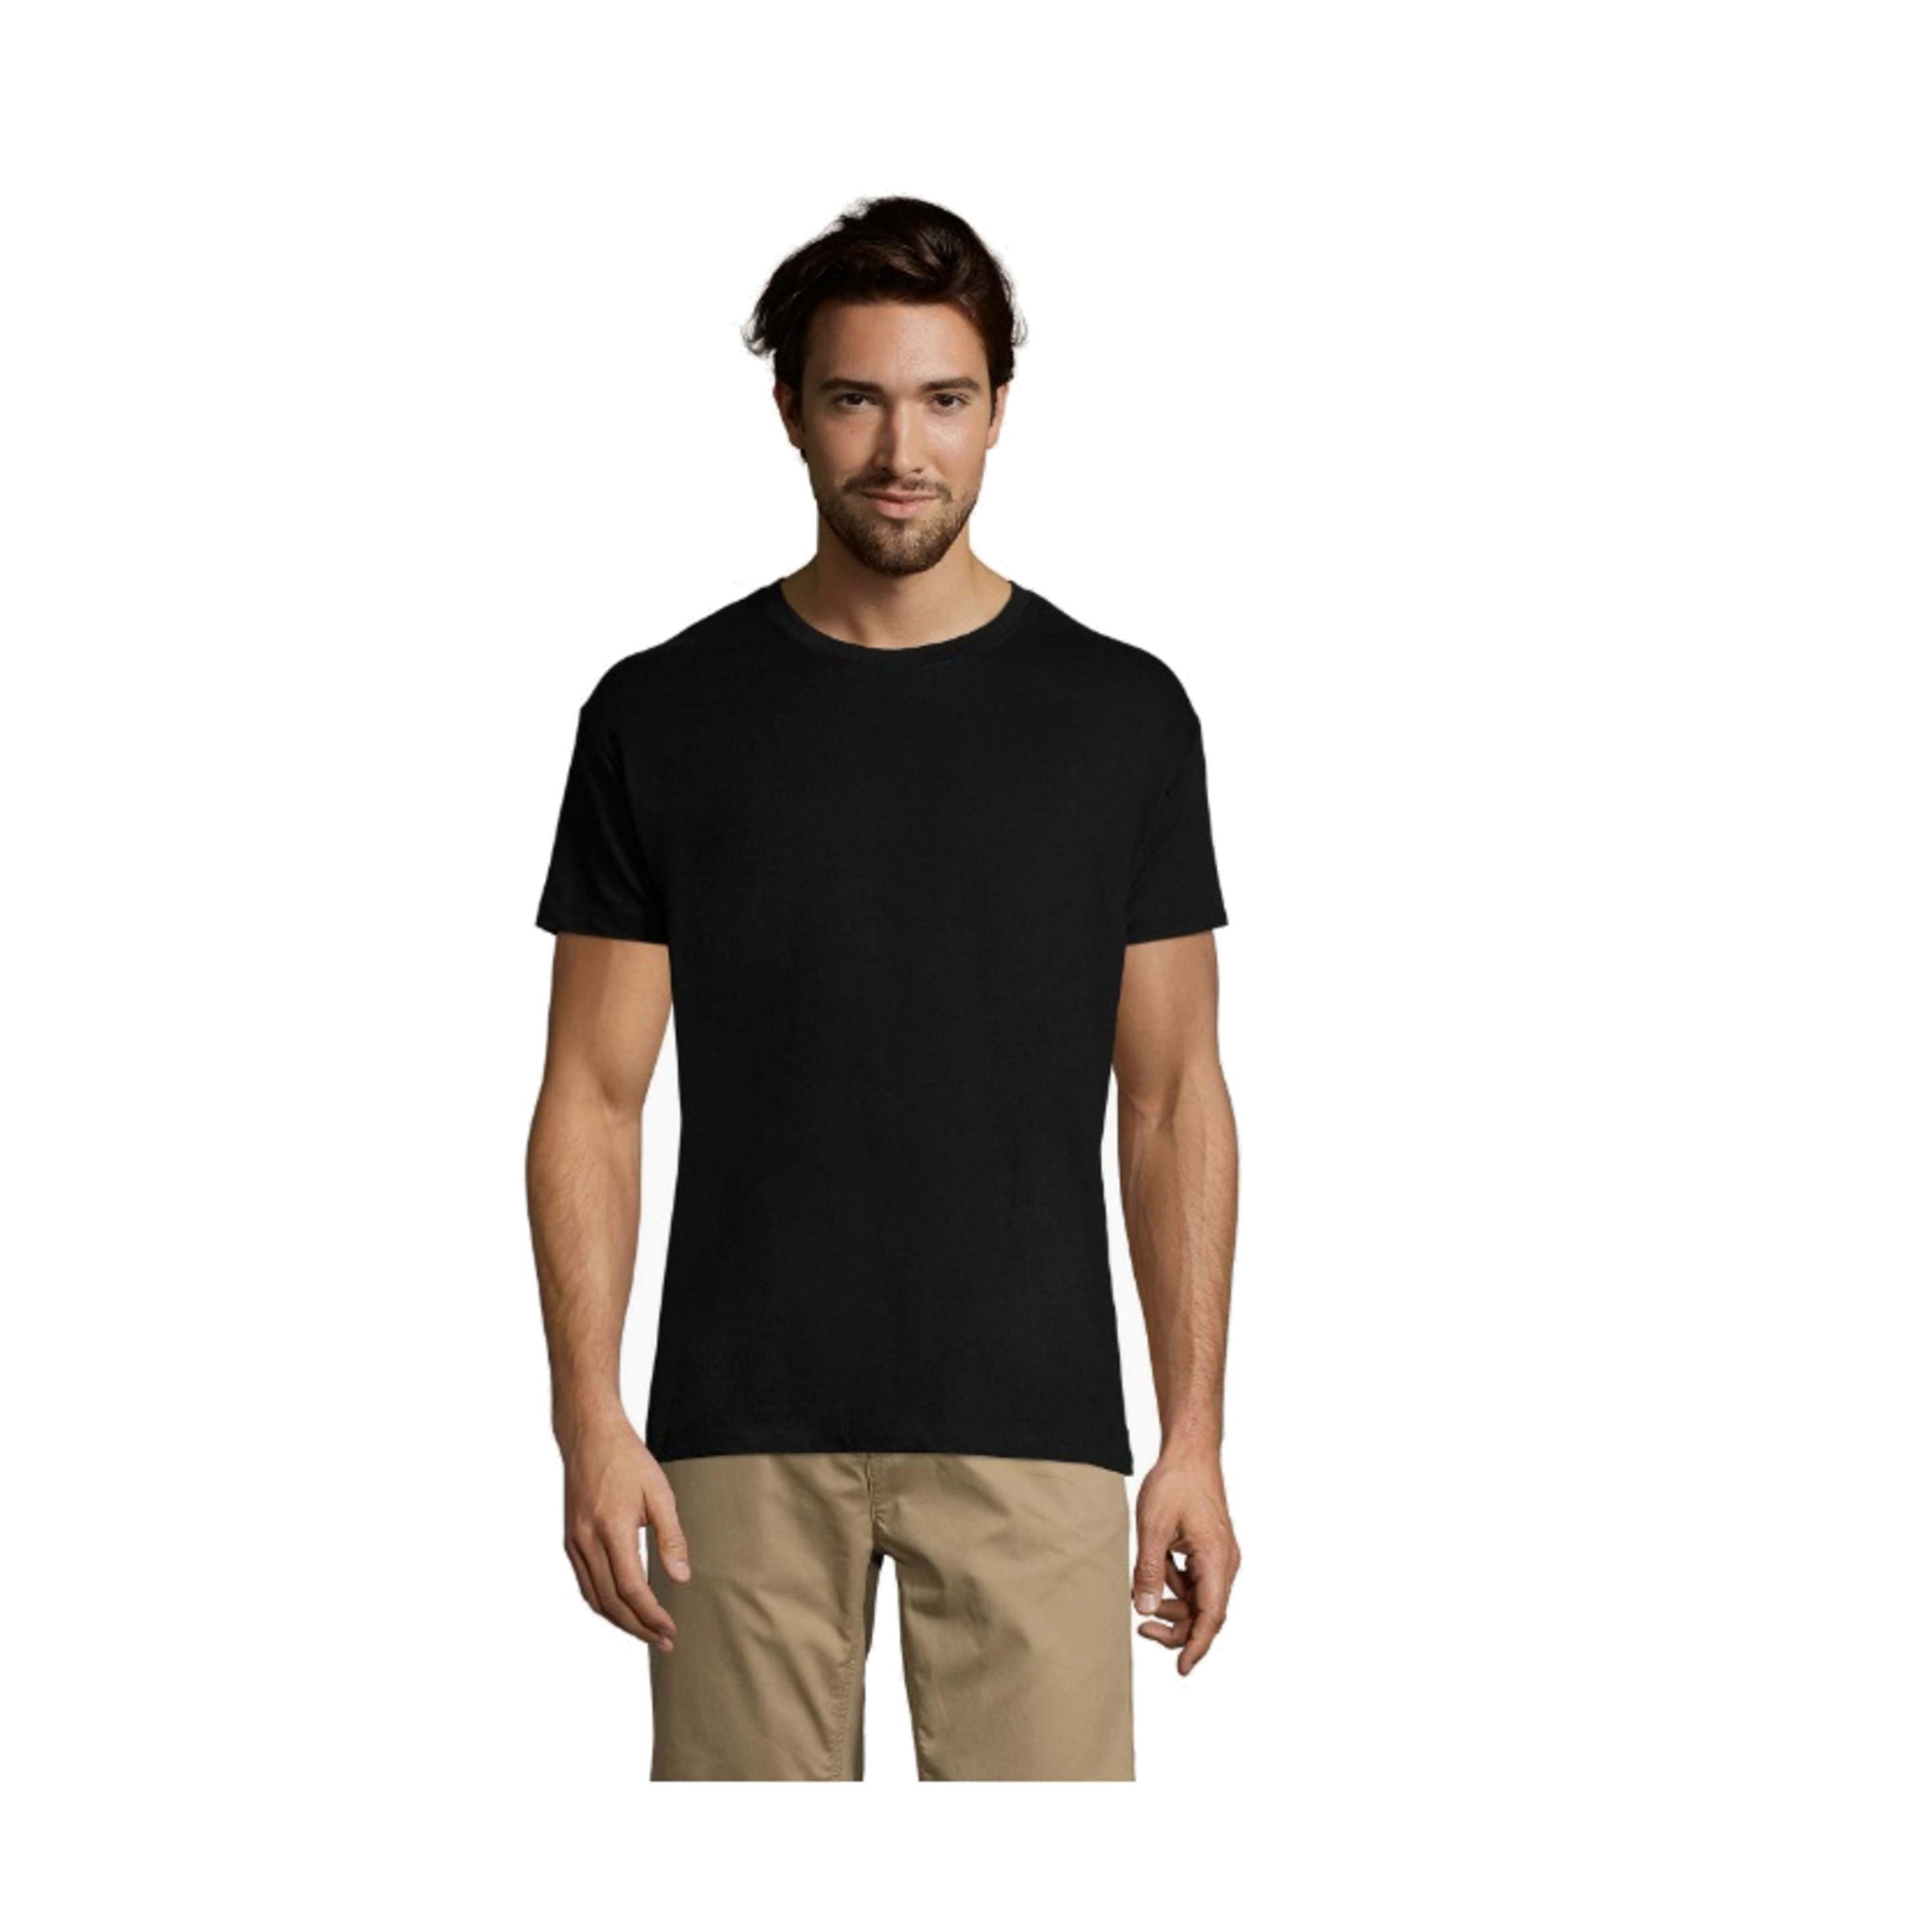 Pacote De 5 Camisetas / Camiseta Unisex Regent Crewneck